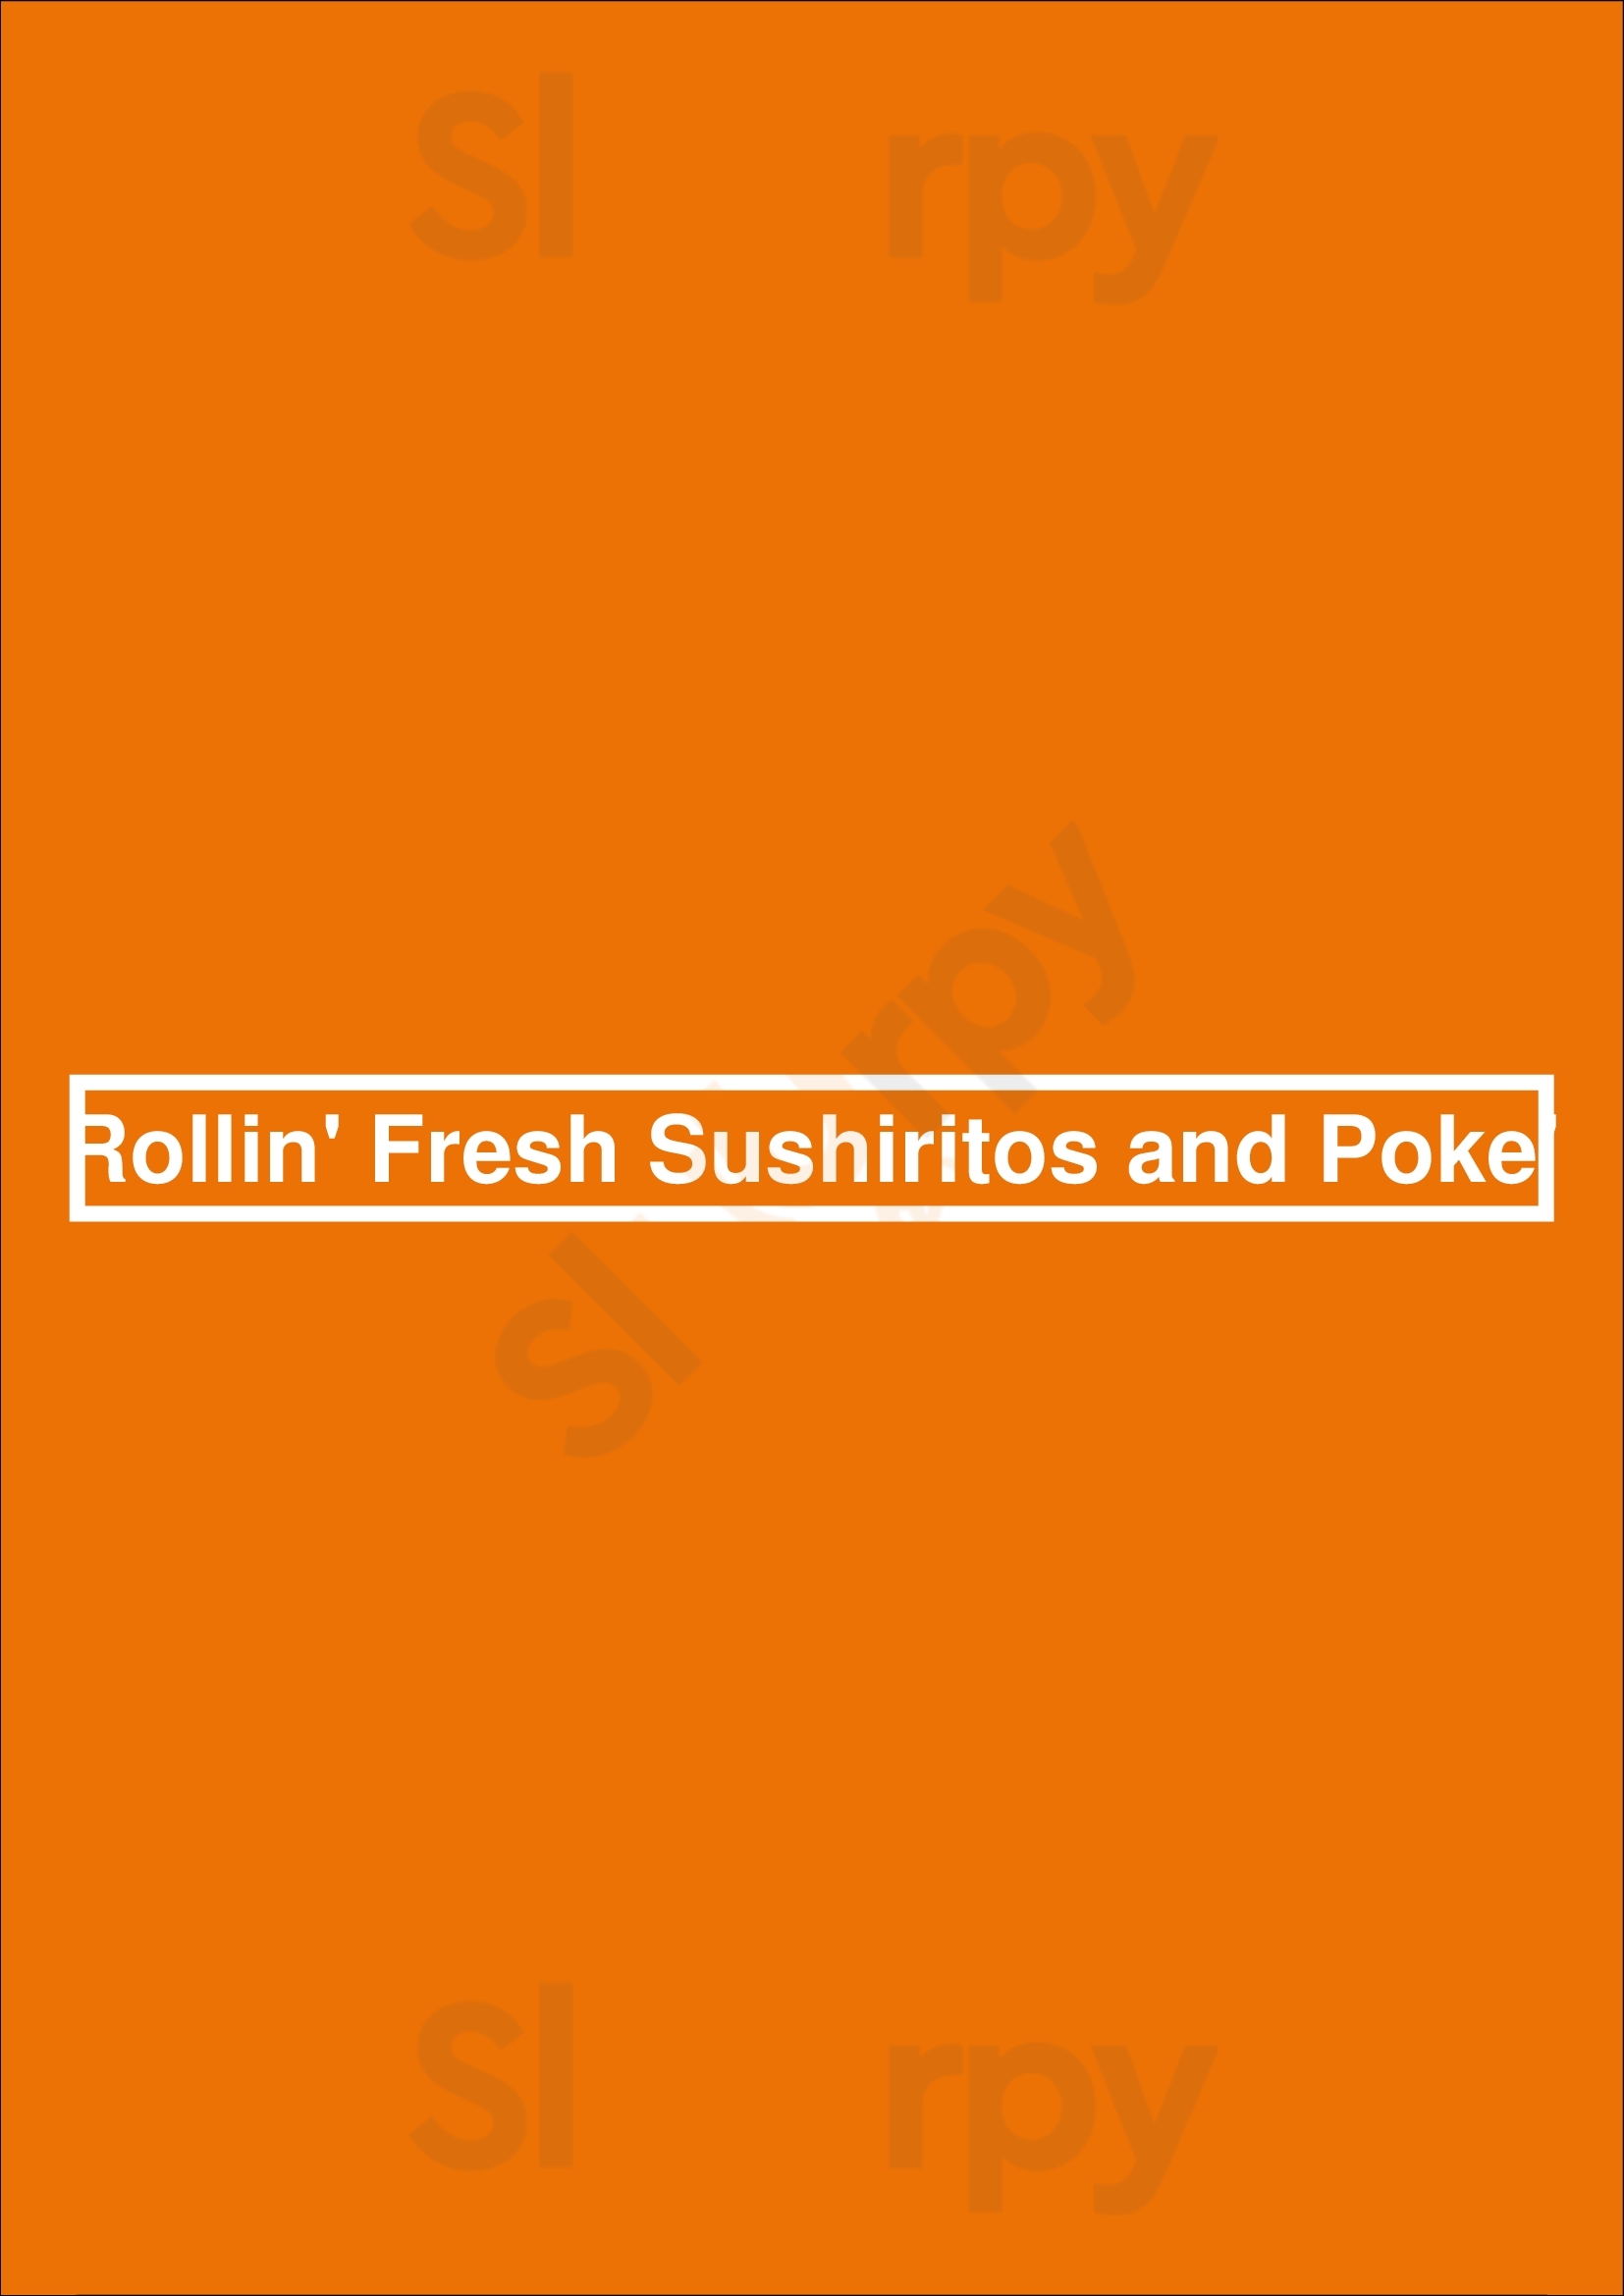 Rollin Fresh Sushiritos & Poke Portland Menu - 1